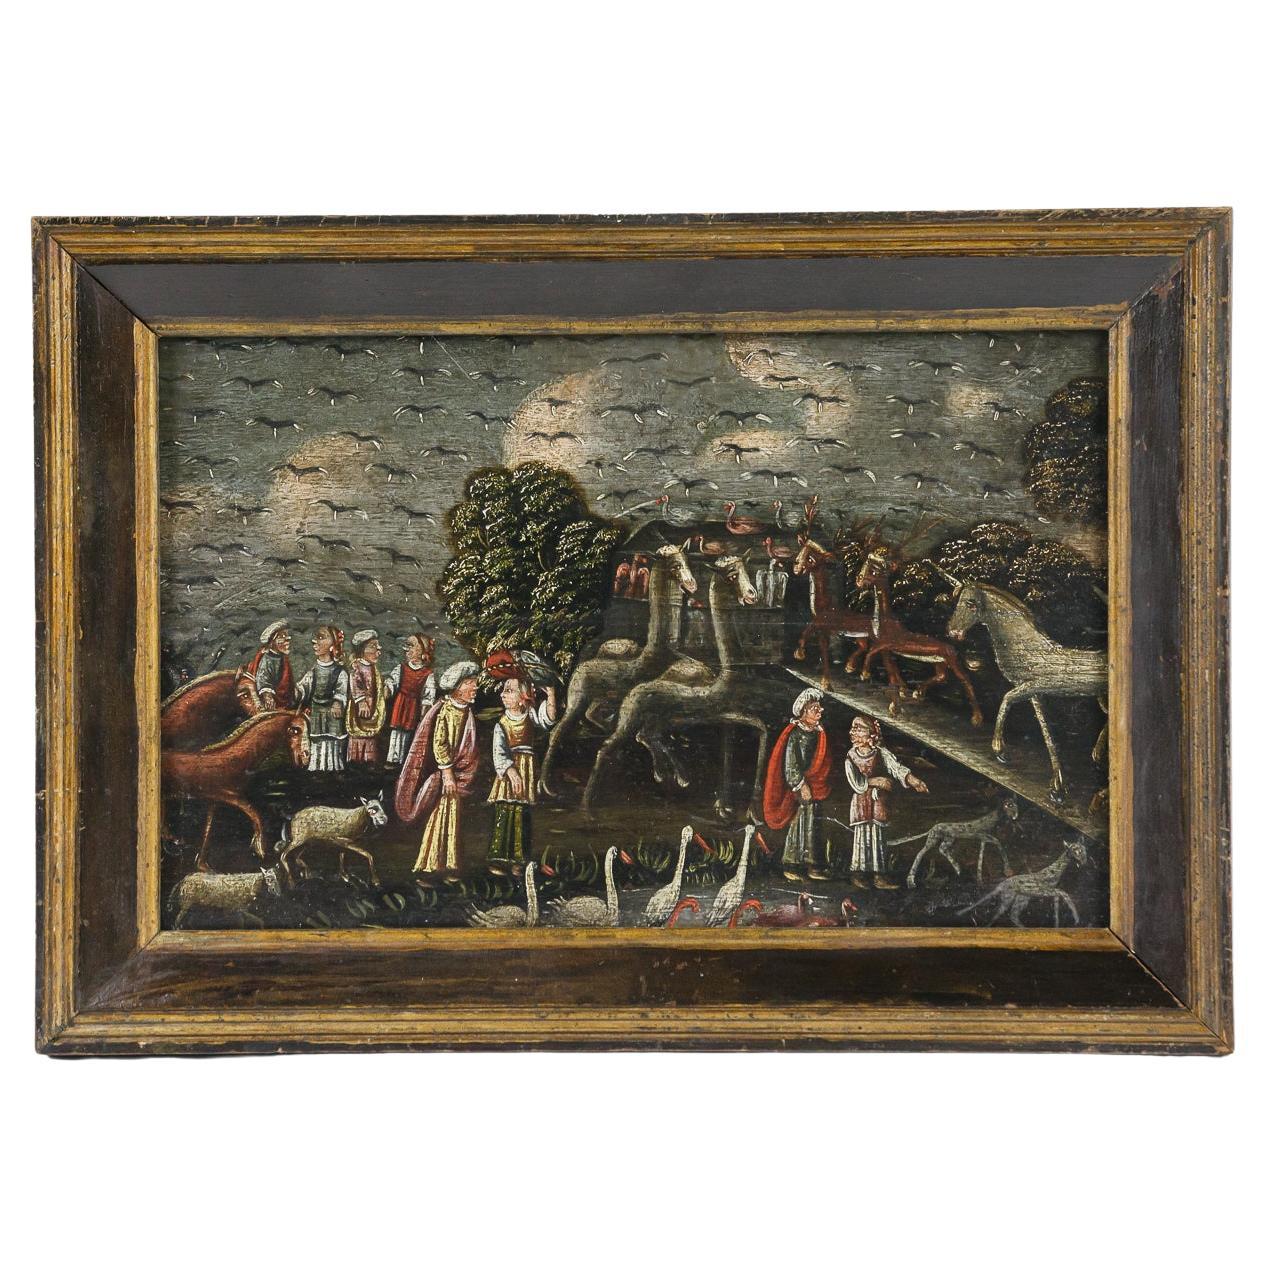 Naïve 19th Century Oil on Panel of Noahs Ark